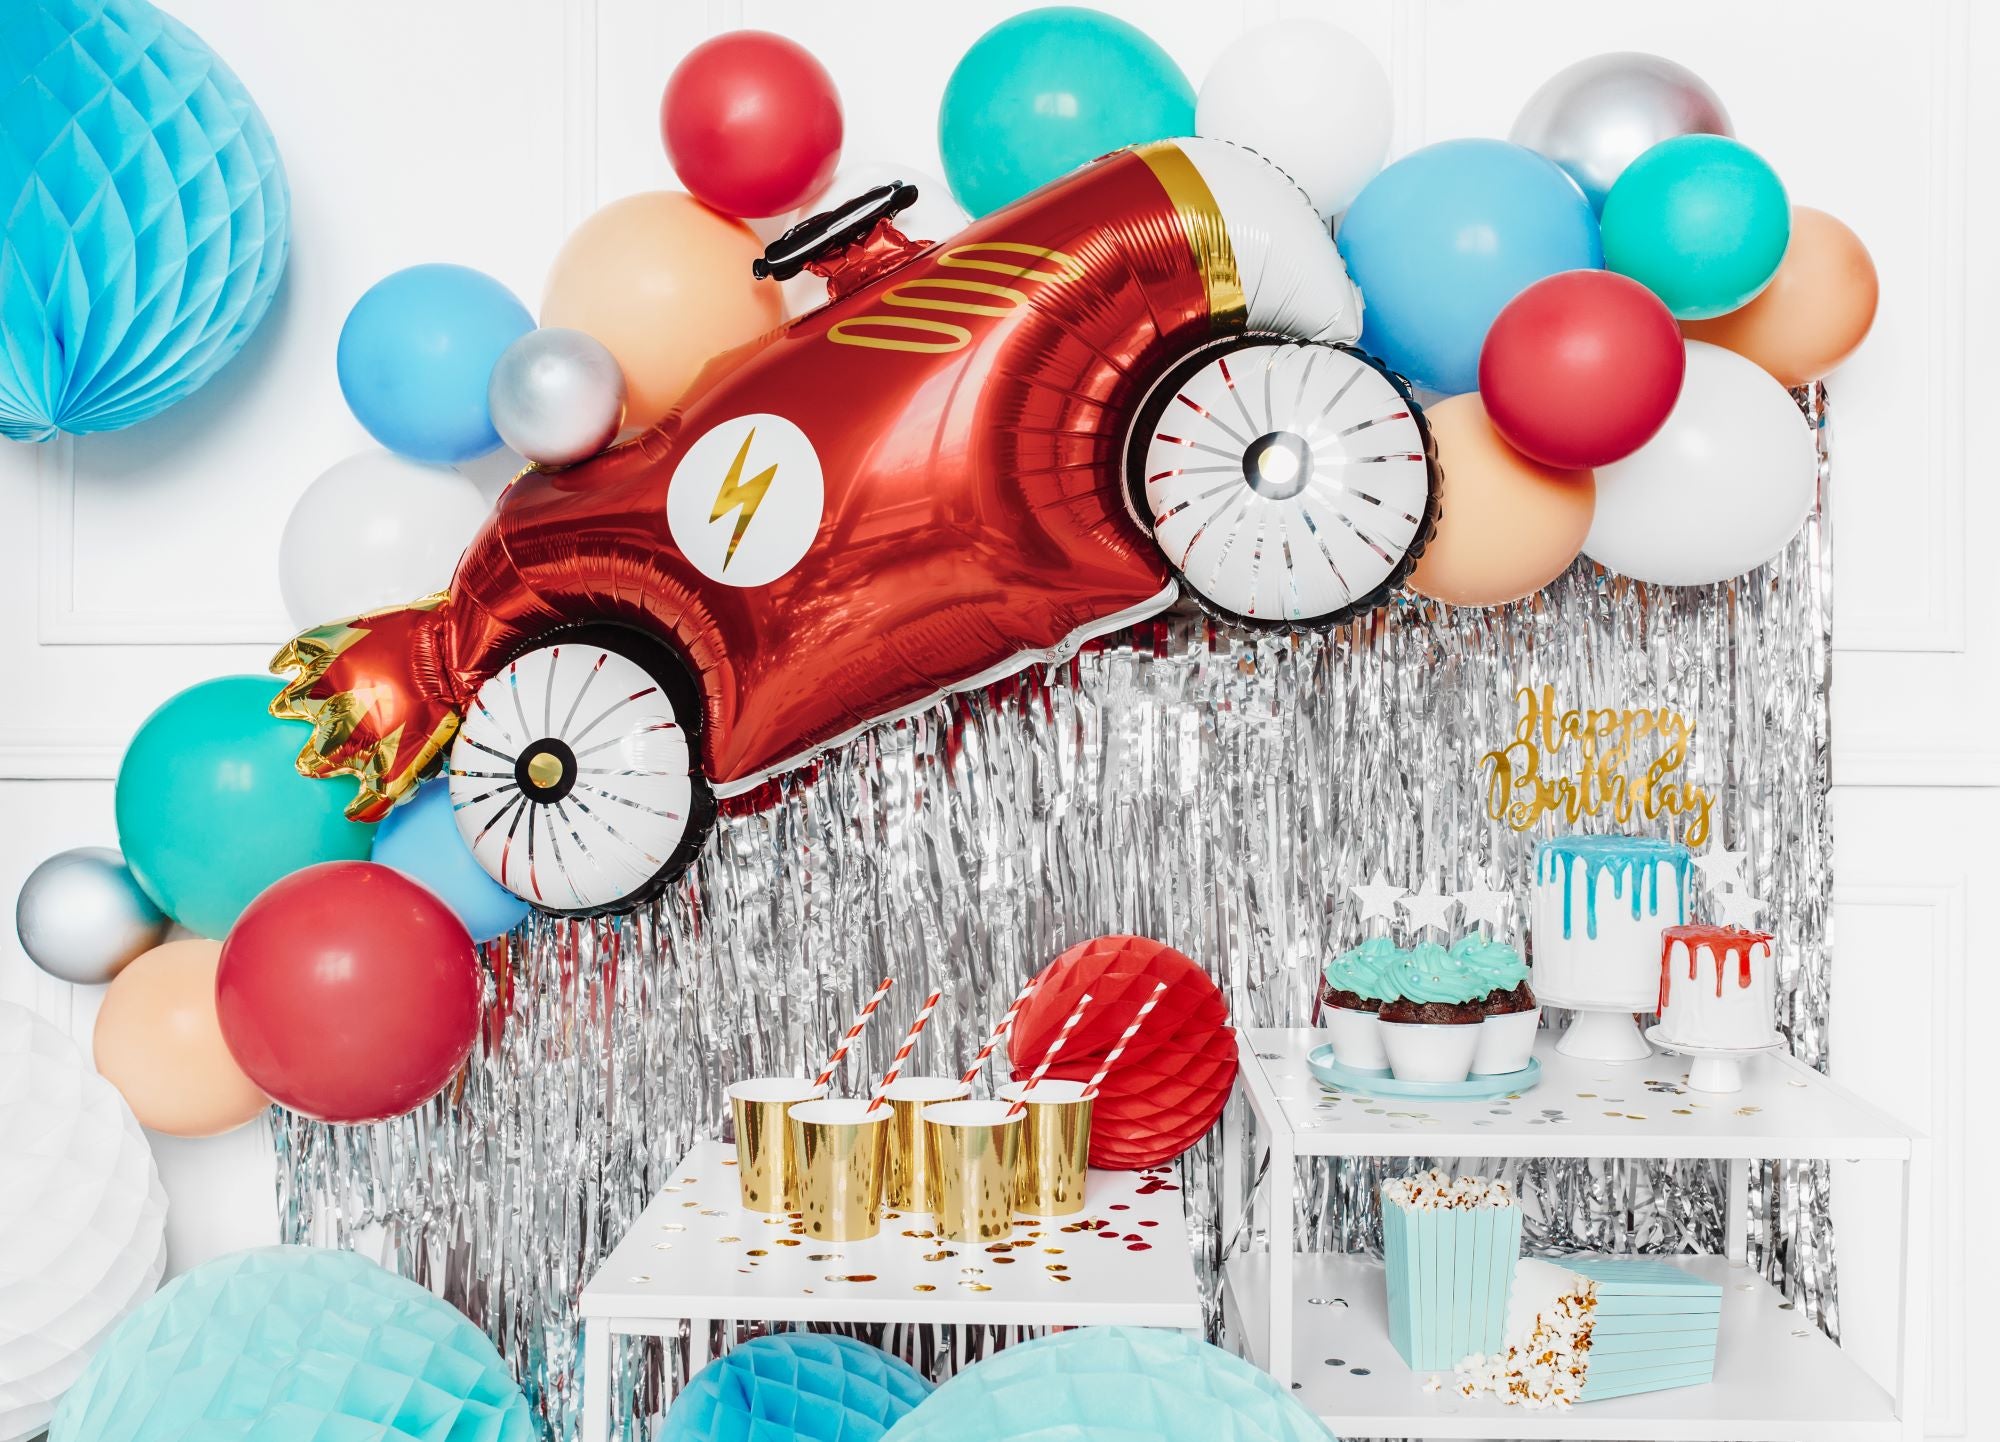 Race Car Foil Balloon party decoration